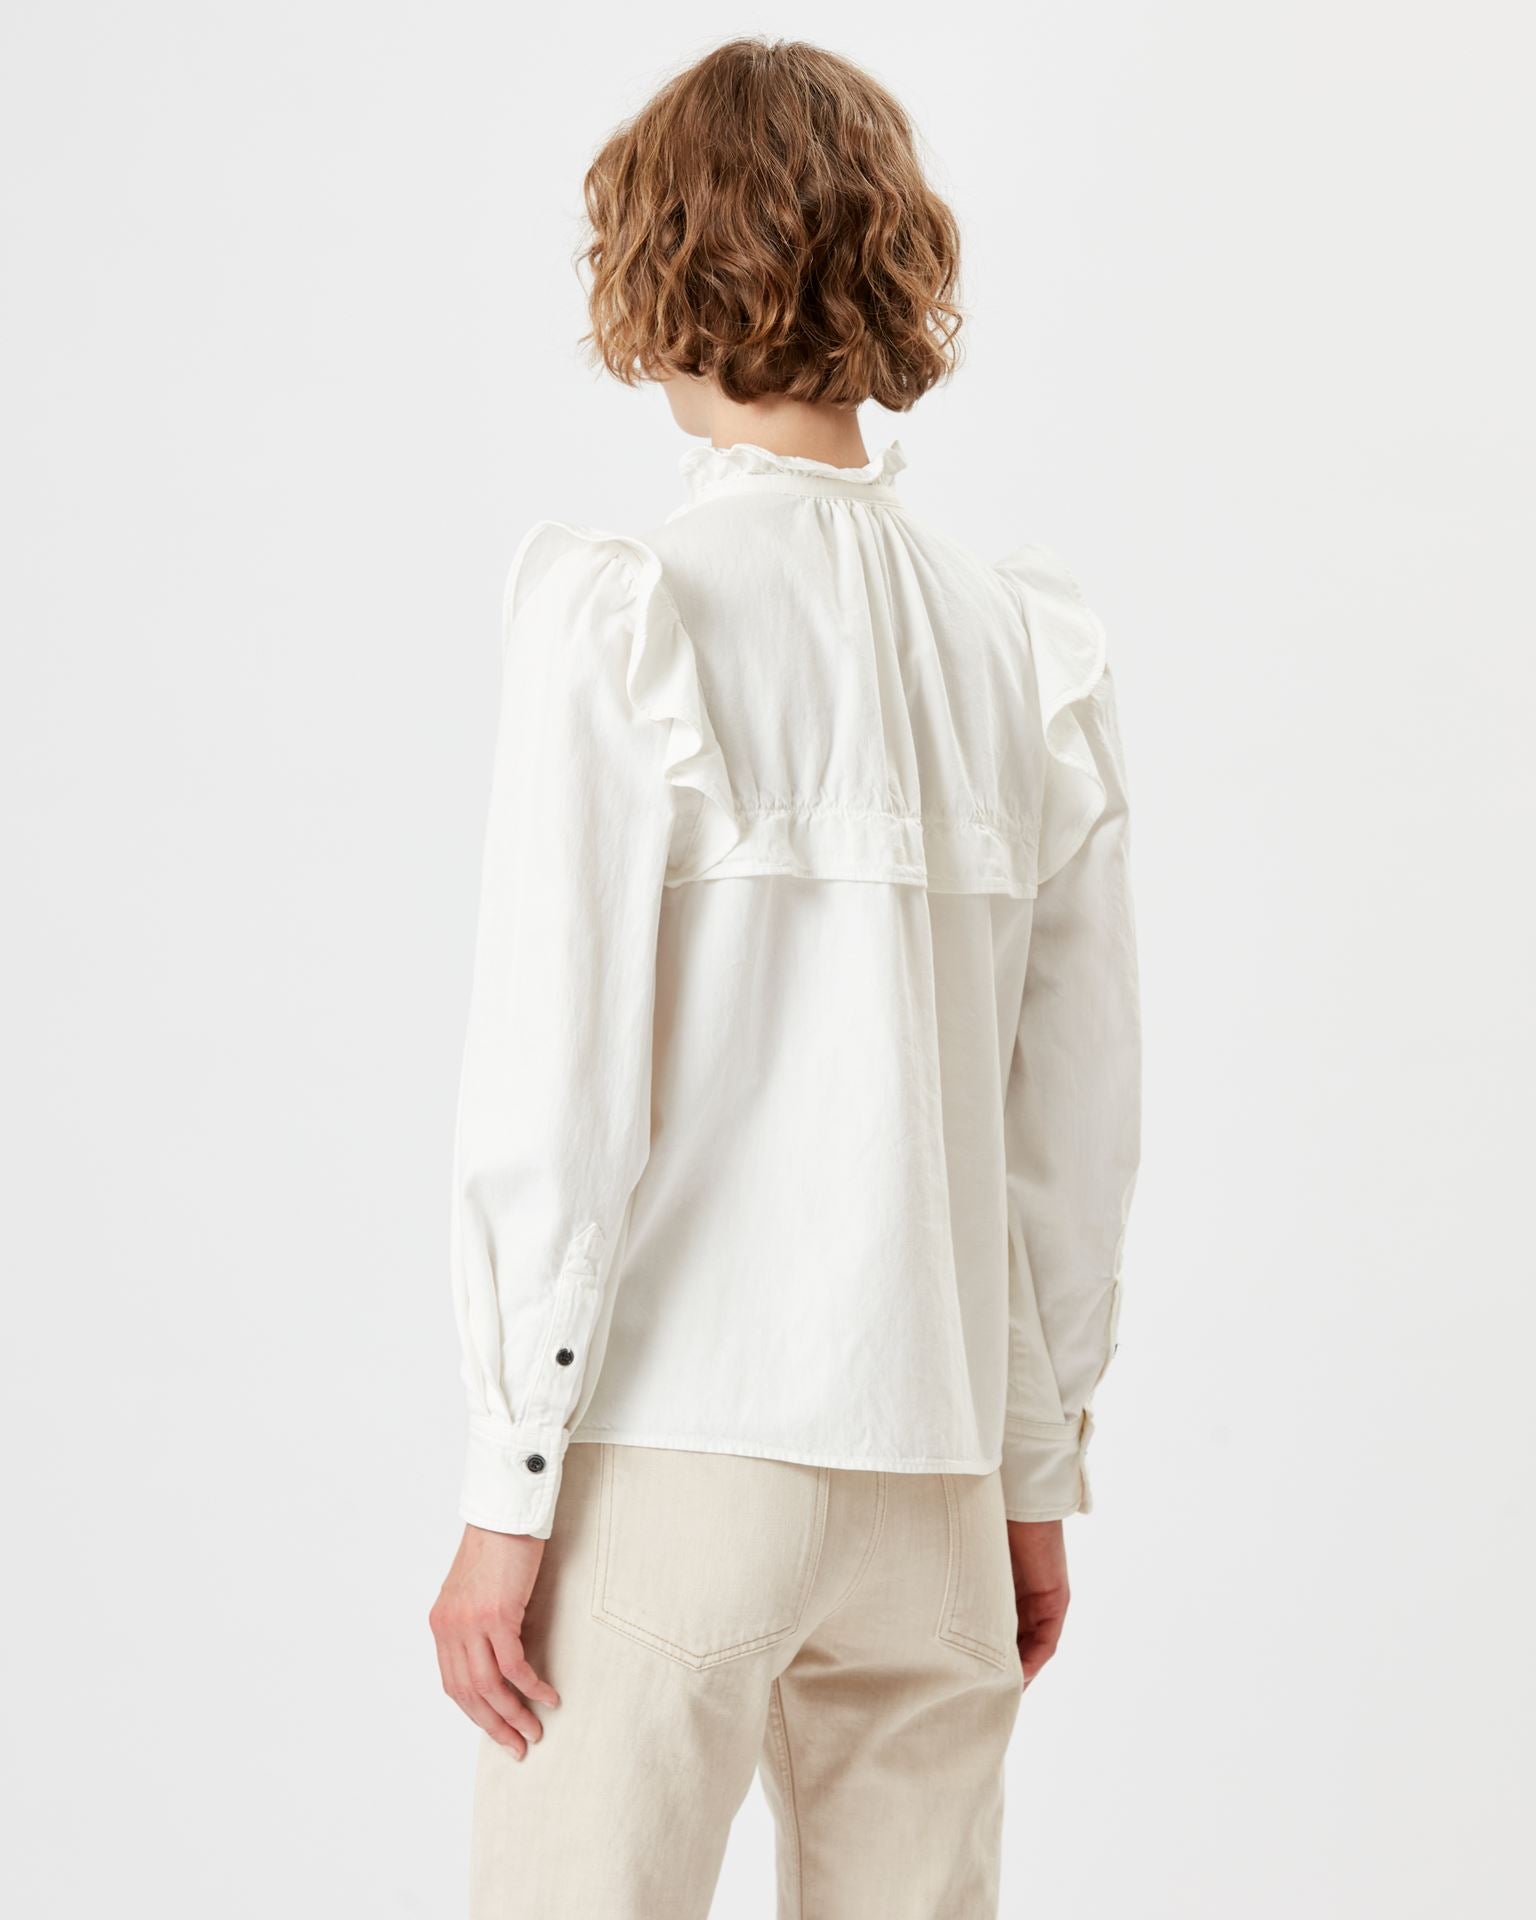 Idety Chambrey Shirt in White